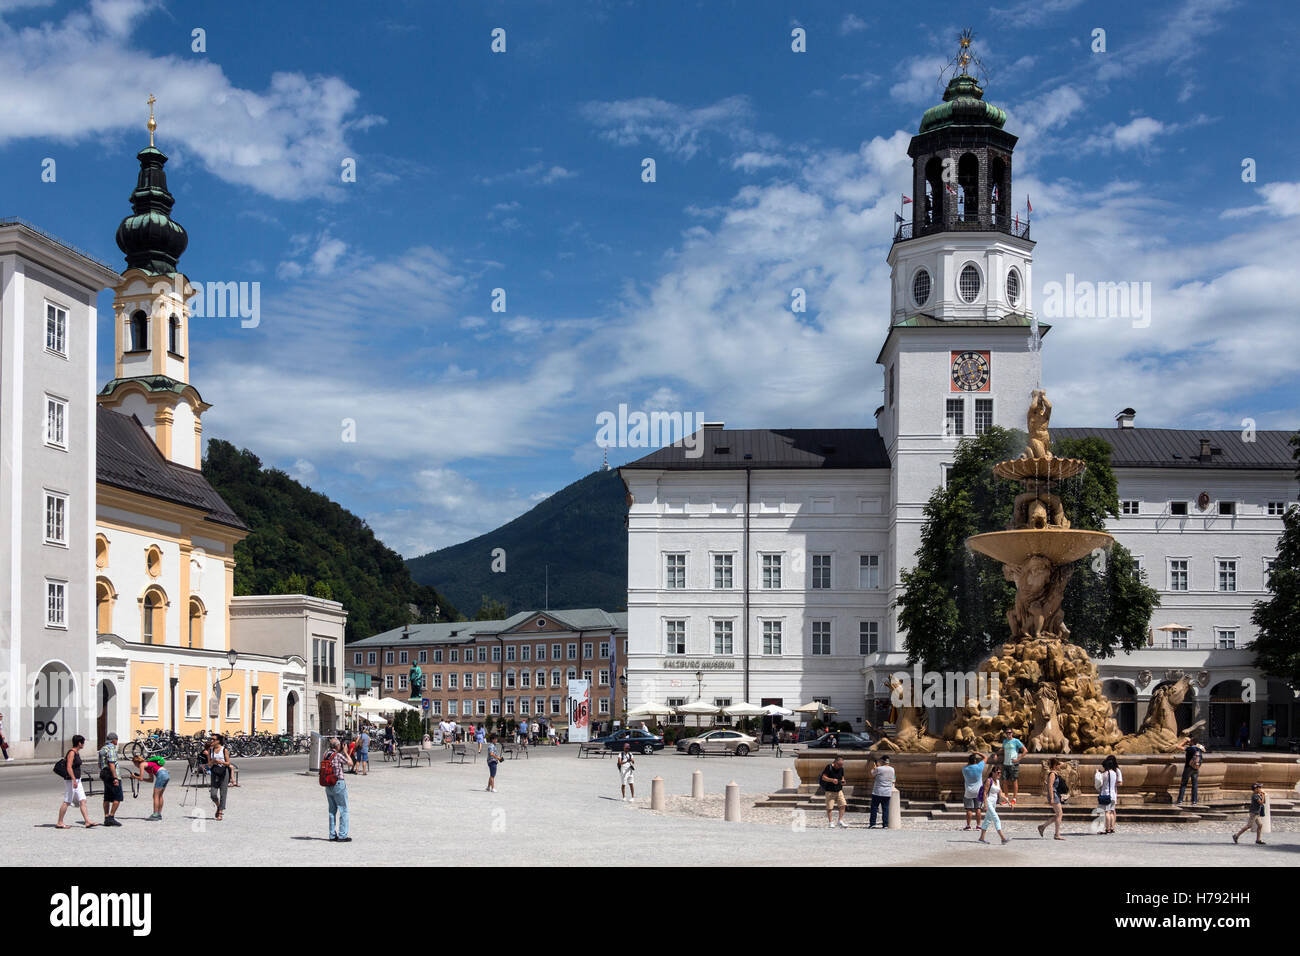 Residenzbrunnen, una gran fuente barroca en Residenzplatz, una gran plaza señorial en el centro histórico de Salzburgo, Austria. Foto de stock